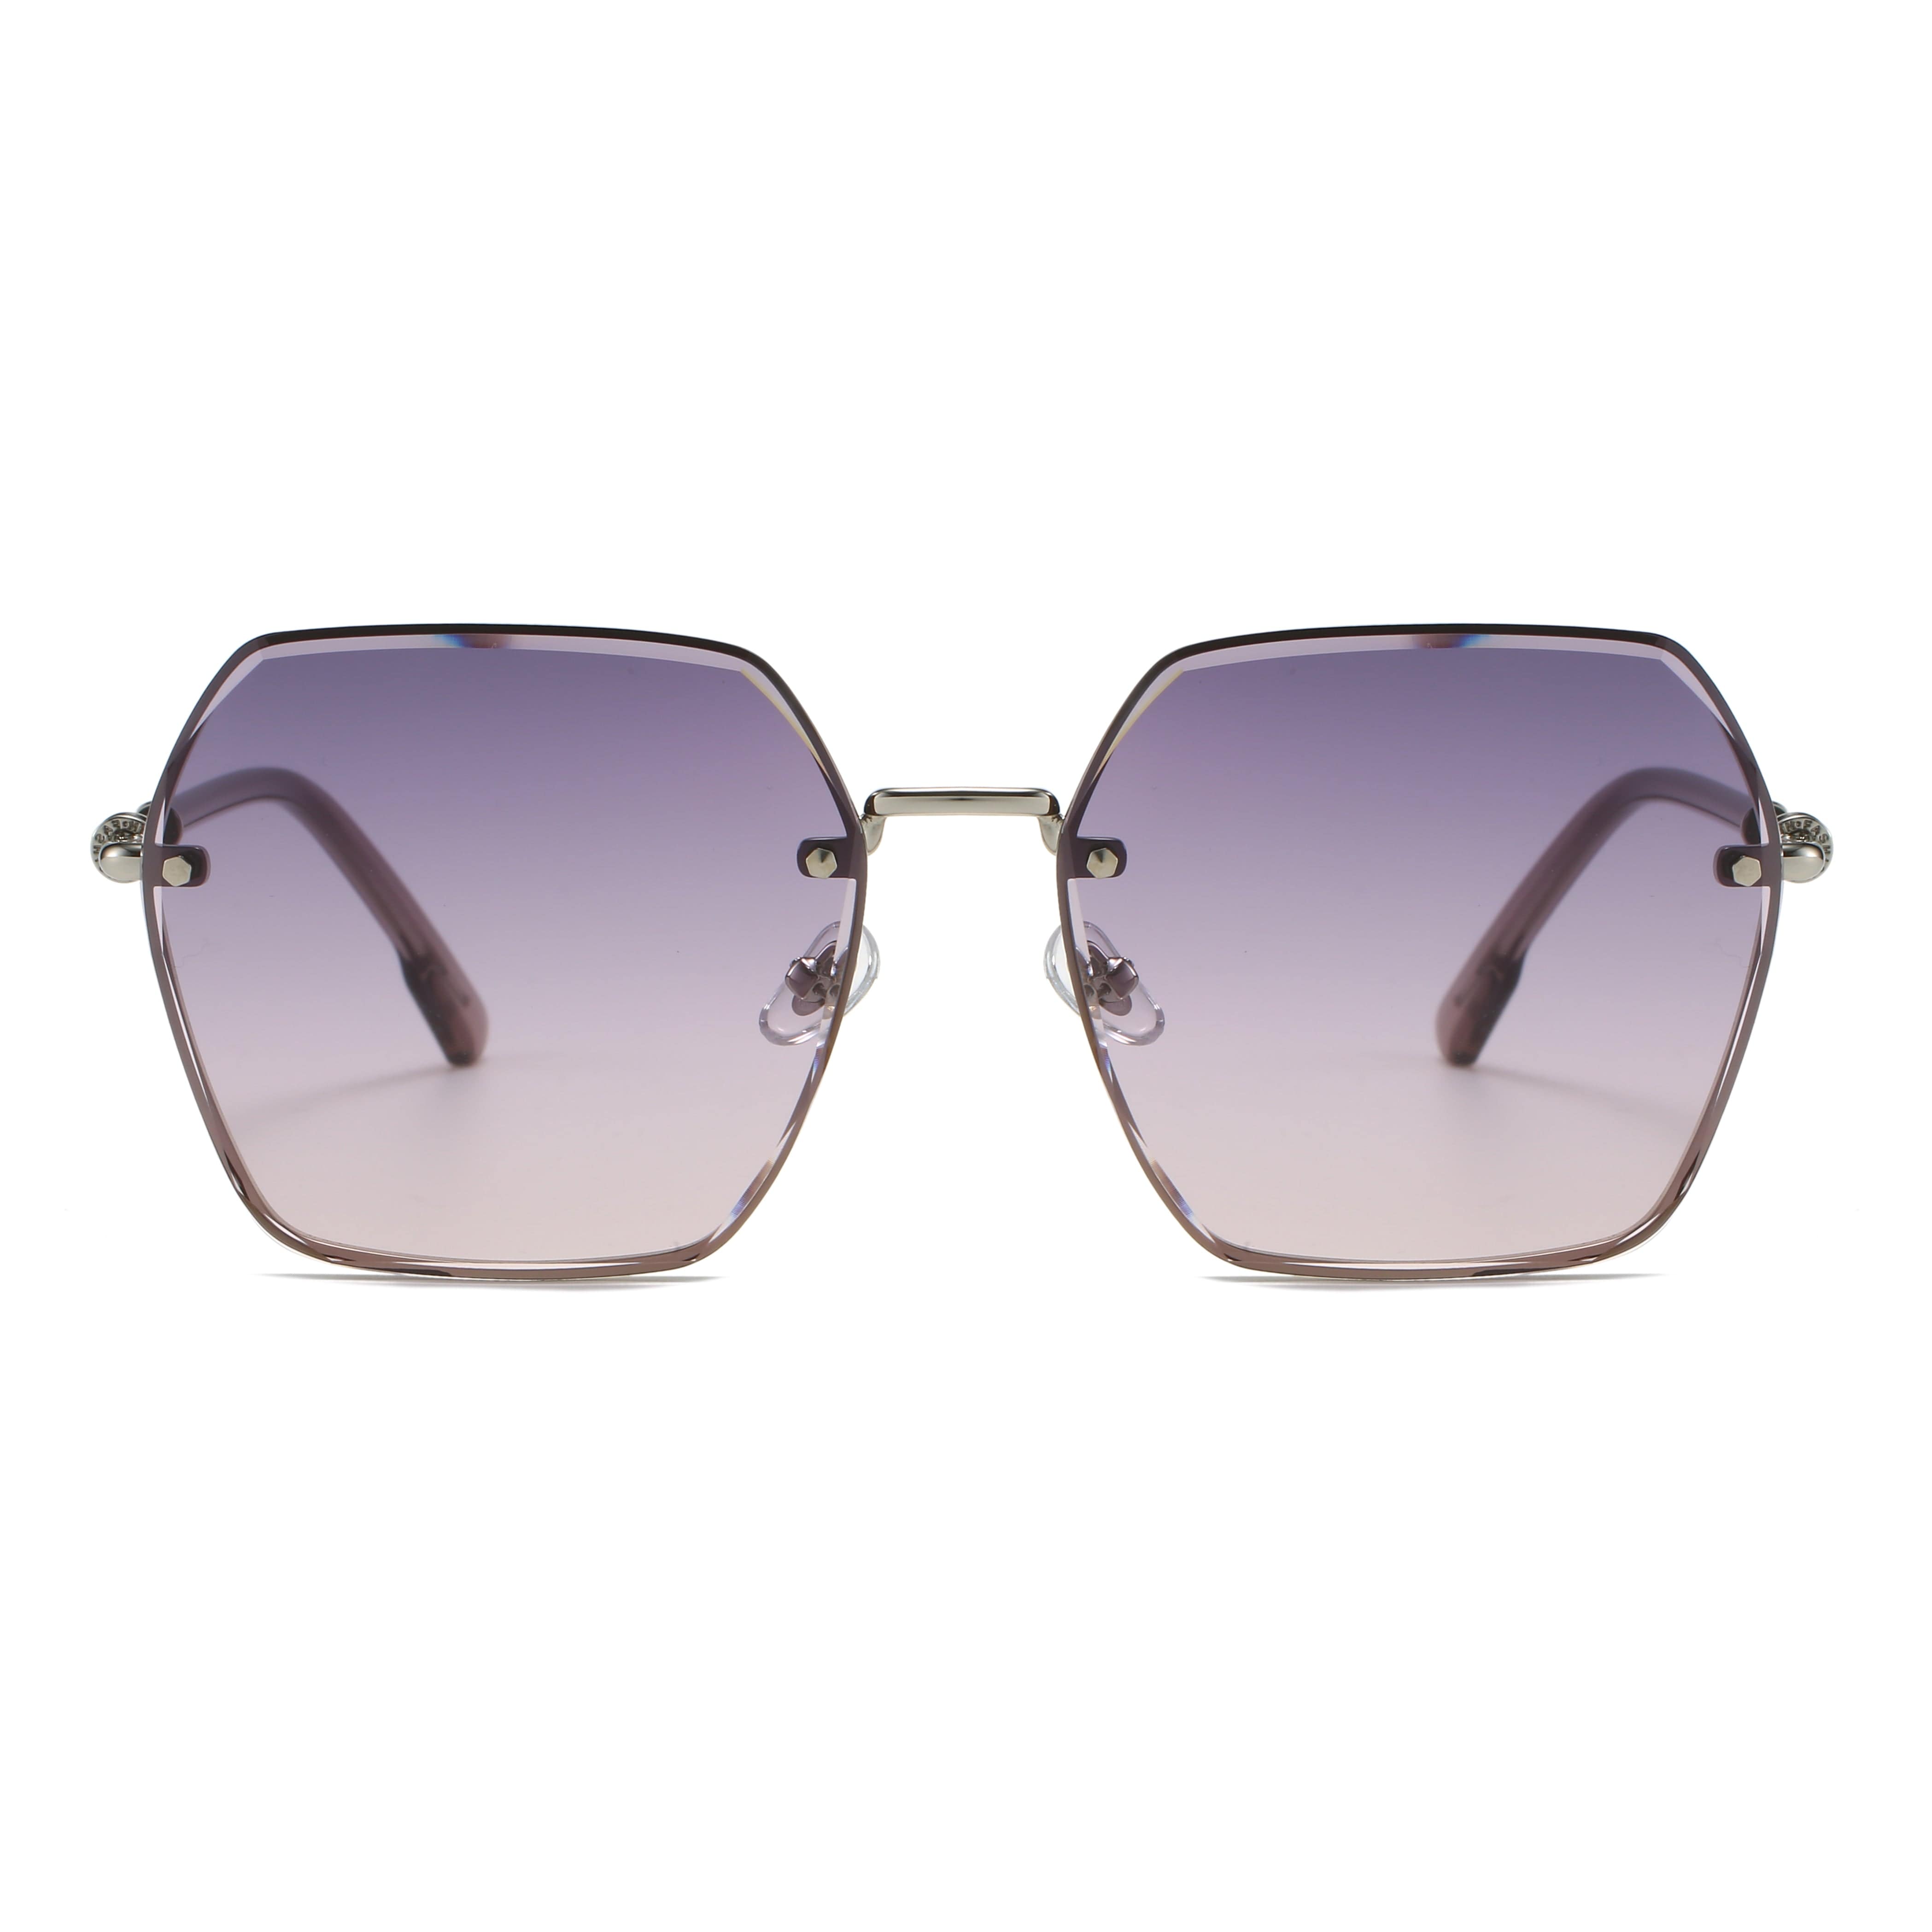 GIUSTIZIERI VECCHI Sunglasses Medium / Pastel Violet DeluxeDiva Uno